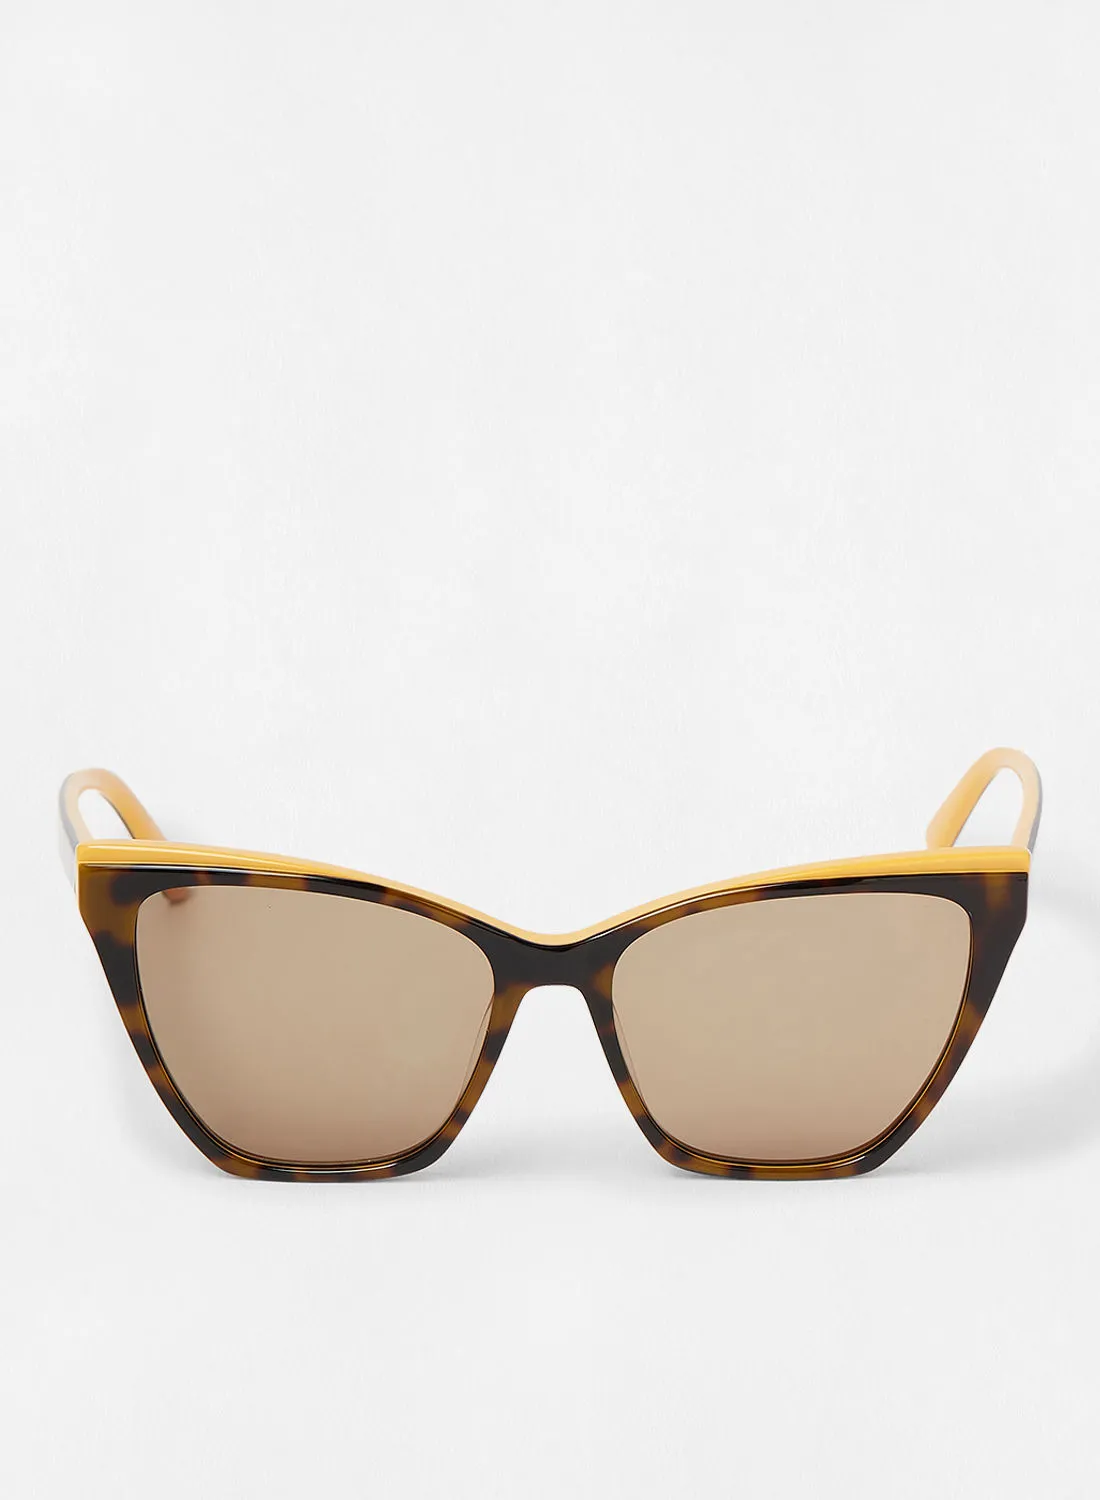 Karl Lagerfeld Women's UV Protection Cat Eye Sunglasses - Lens Size: 54 mm